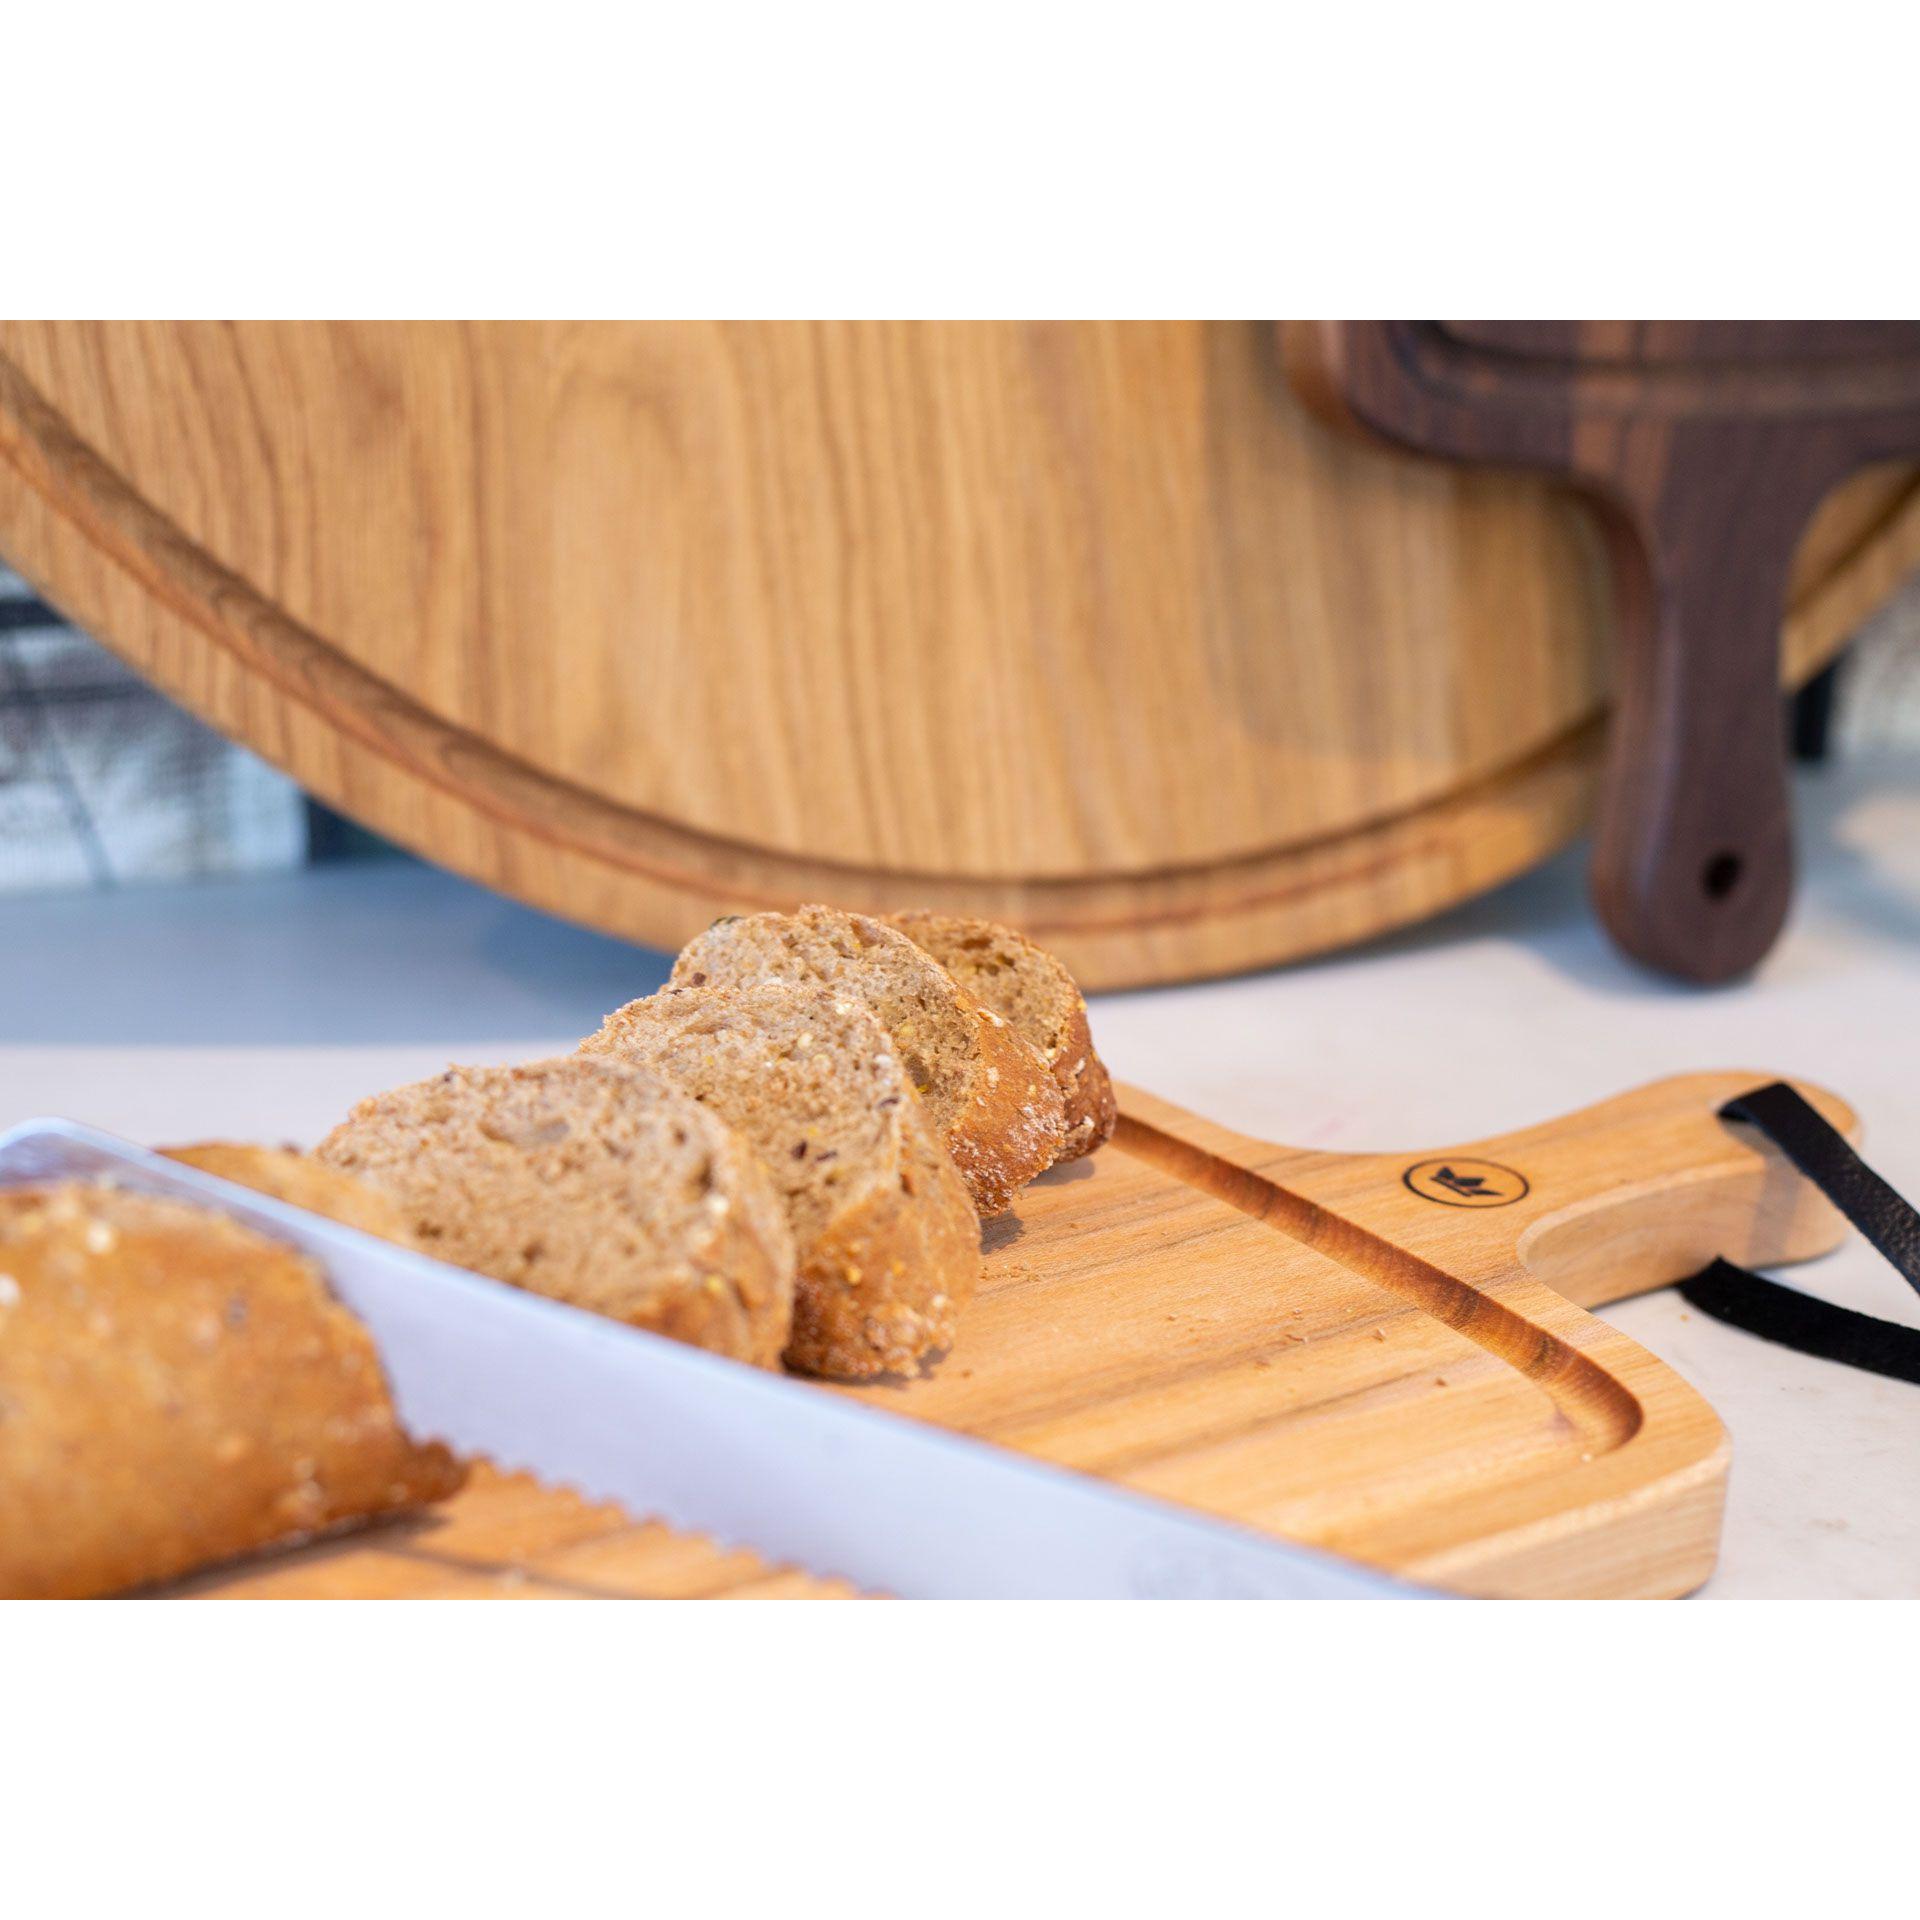 Dutchdeluxes Bread Board XL met strepen, walnoot